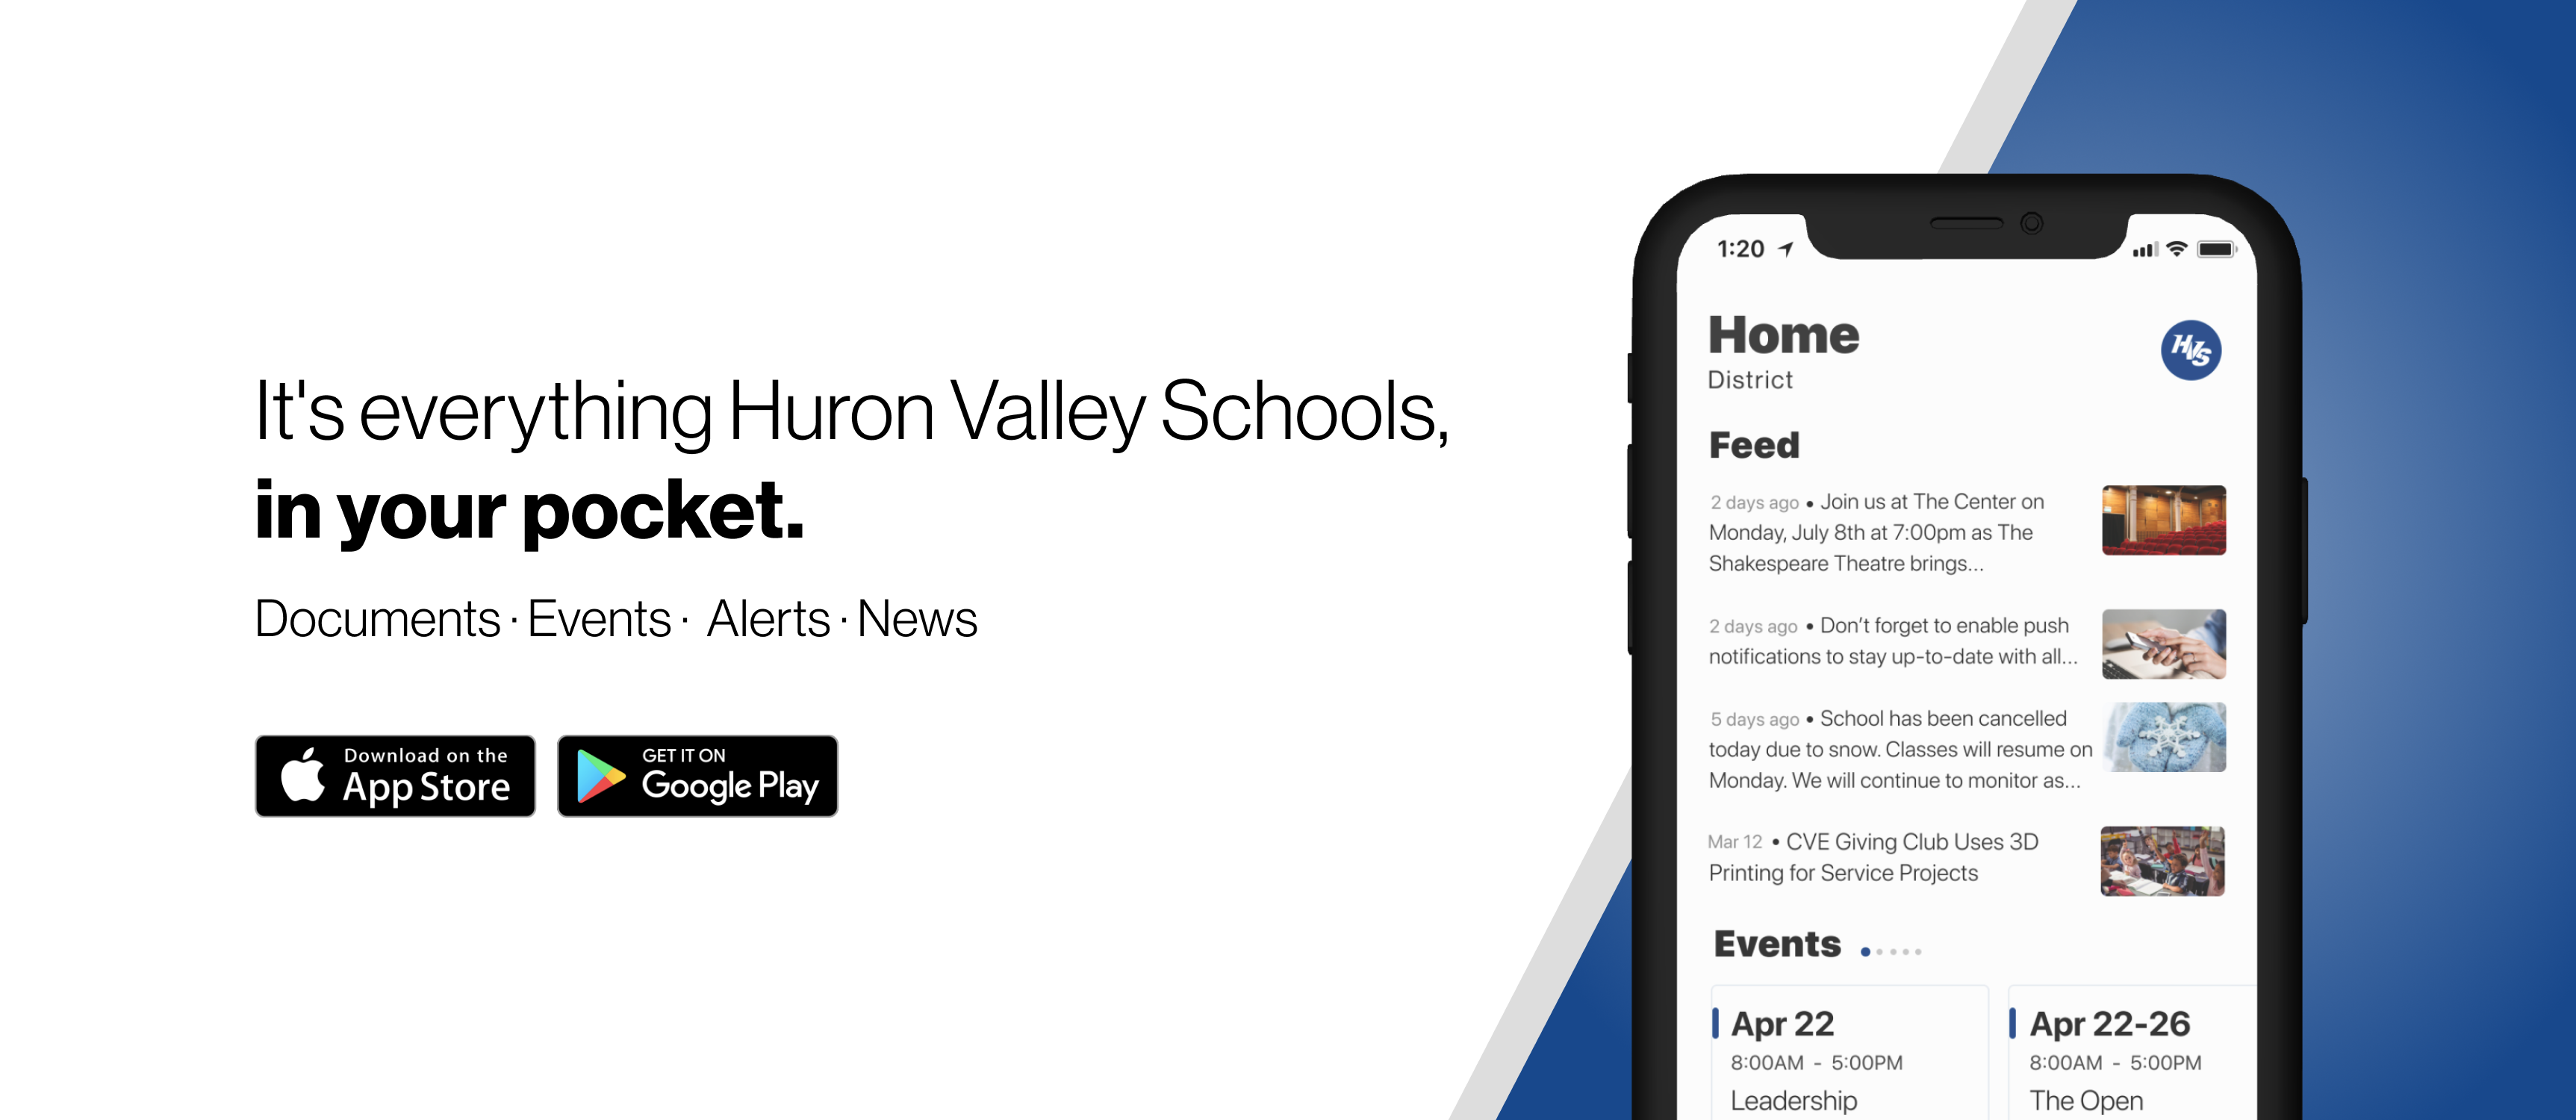 huron valley schools